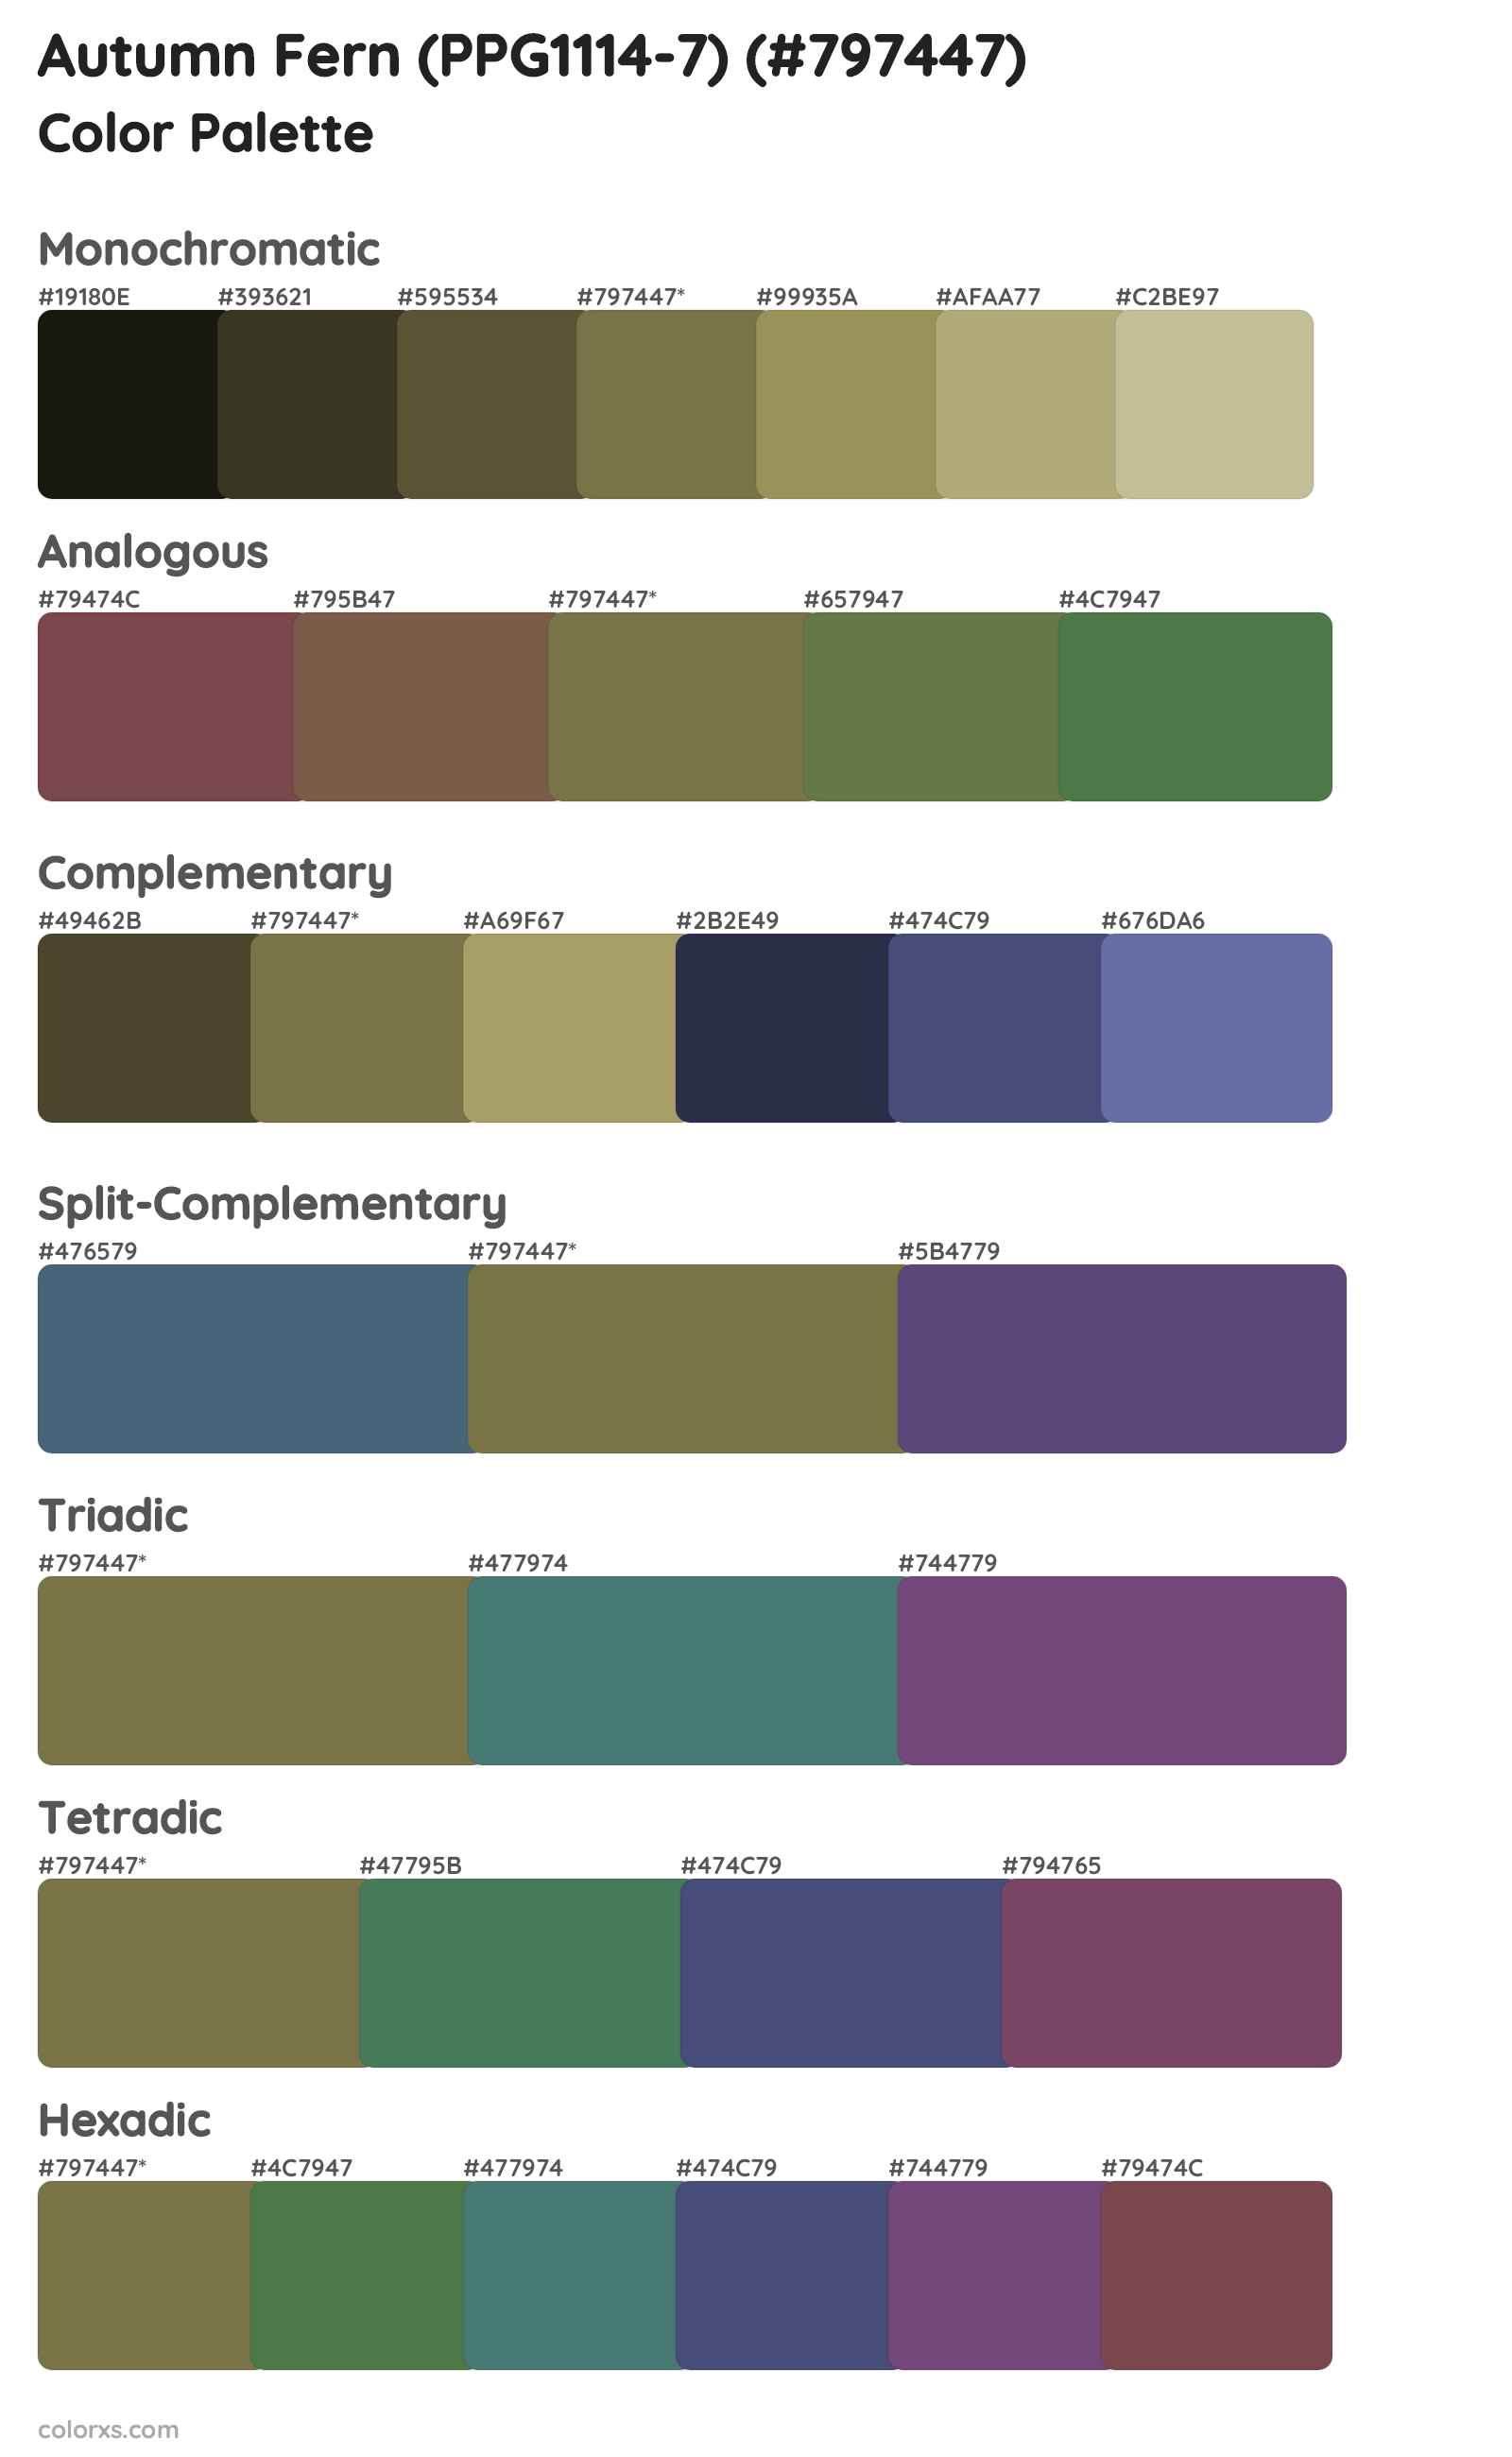 Autumn Fern (PPG1114-7) Color Scheme Palettes